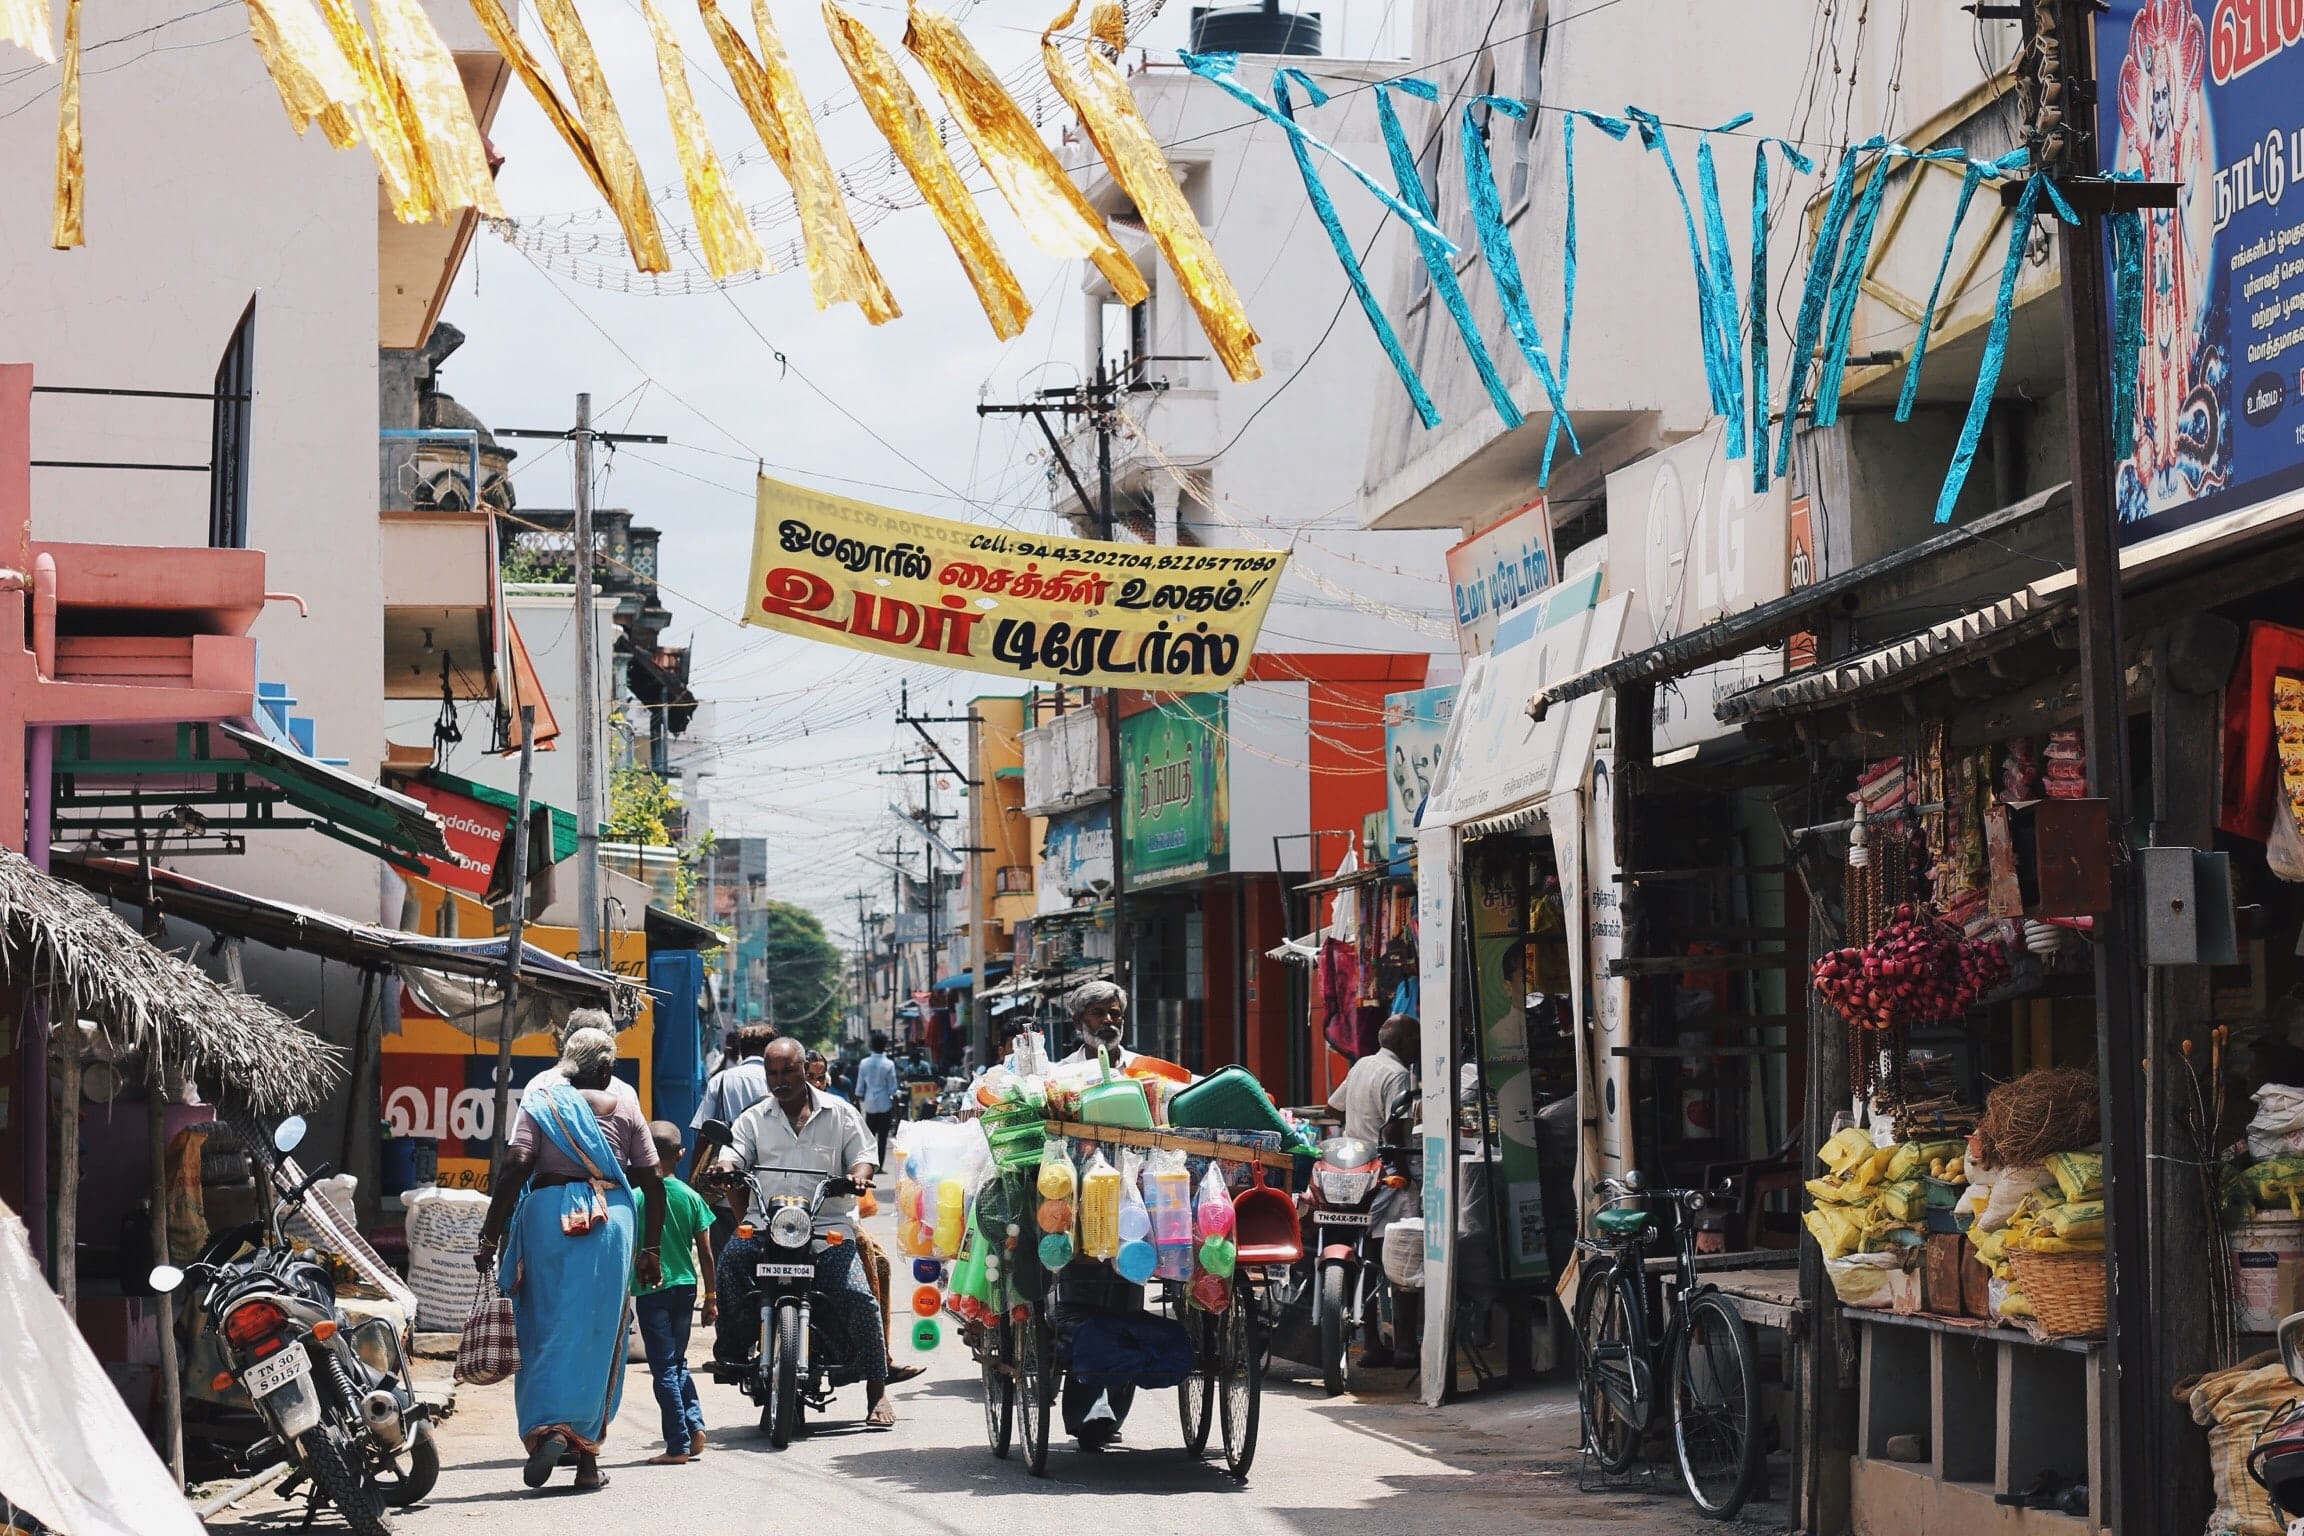 Cliché d'une rue bondée et colorée en Inde